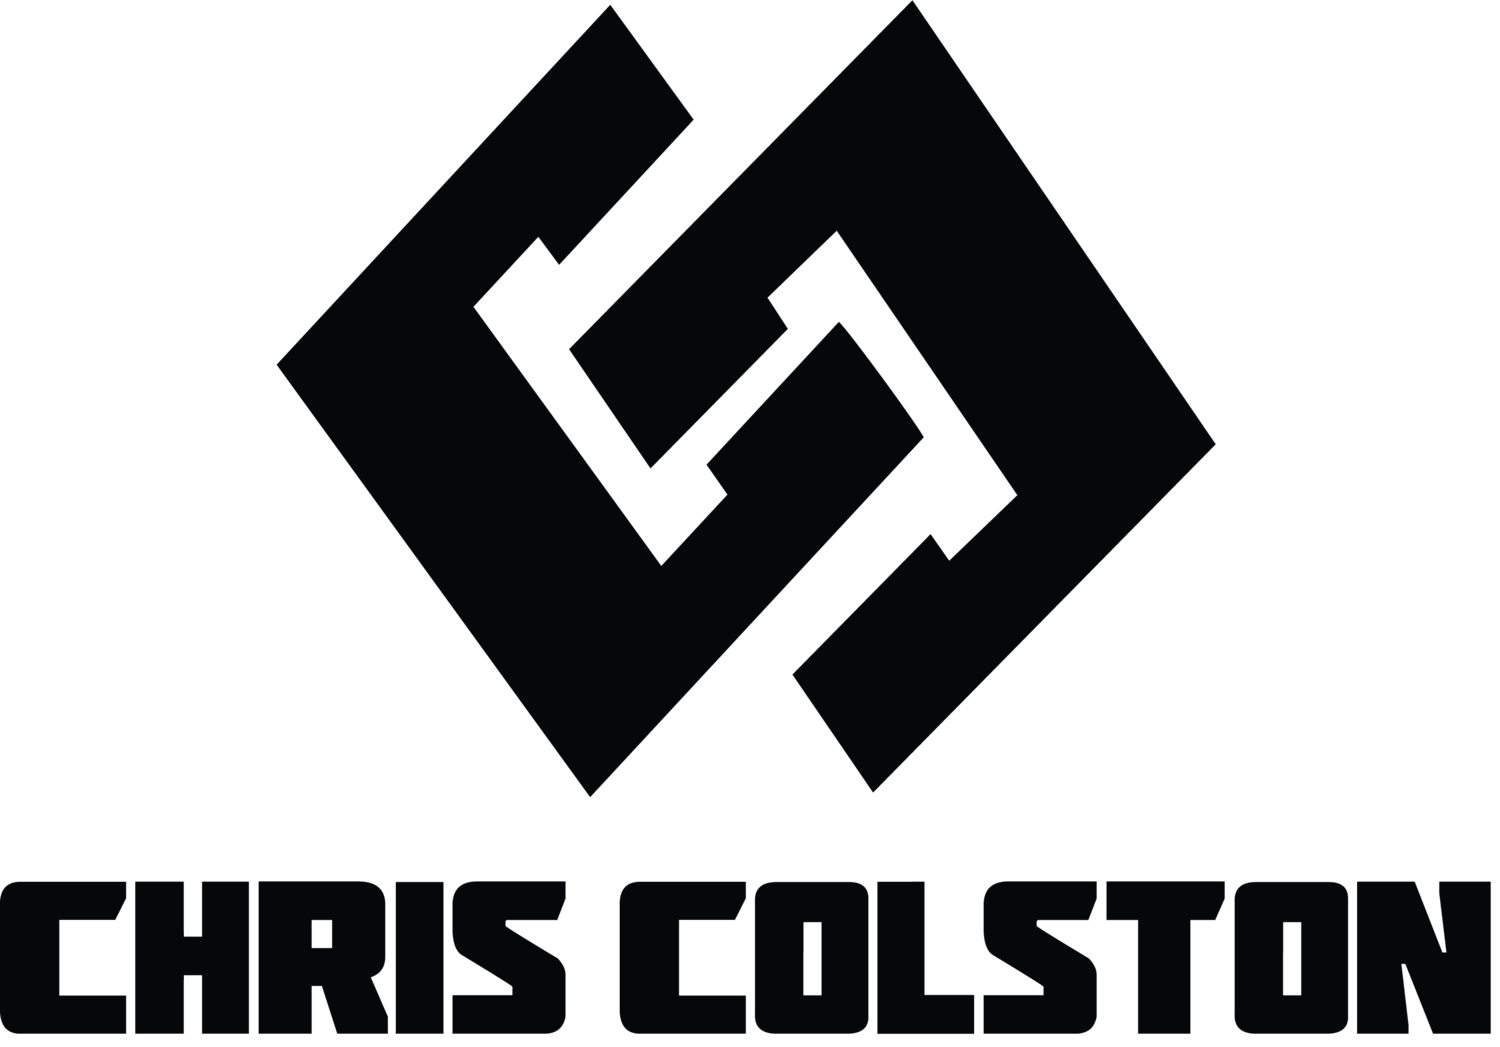 Chris Colston